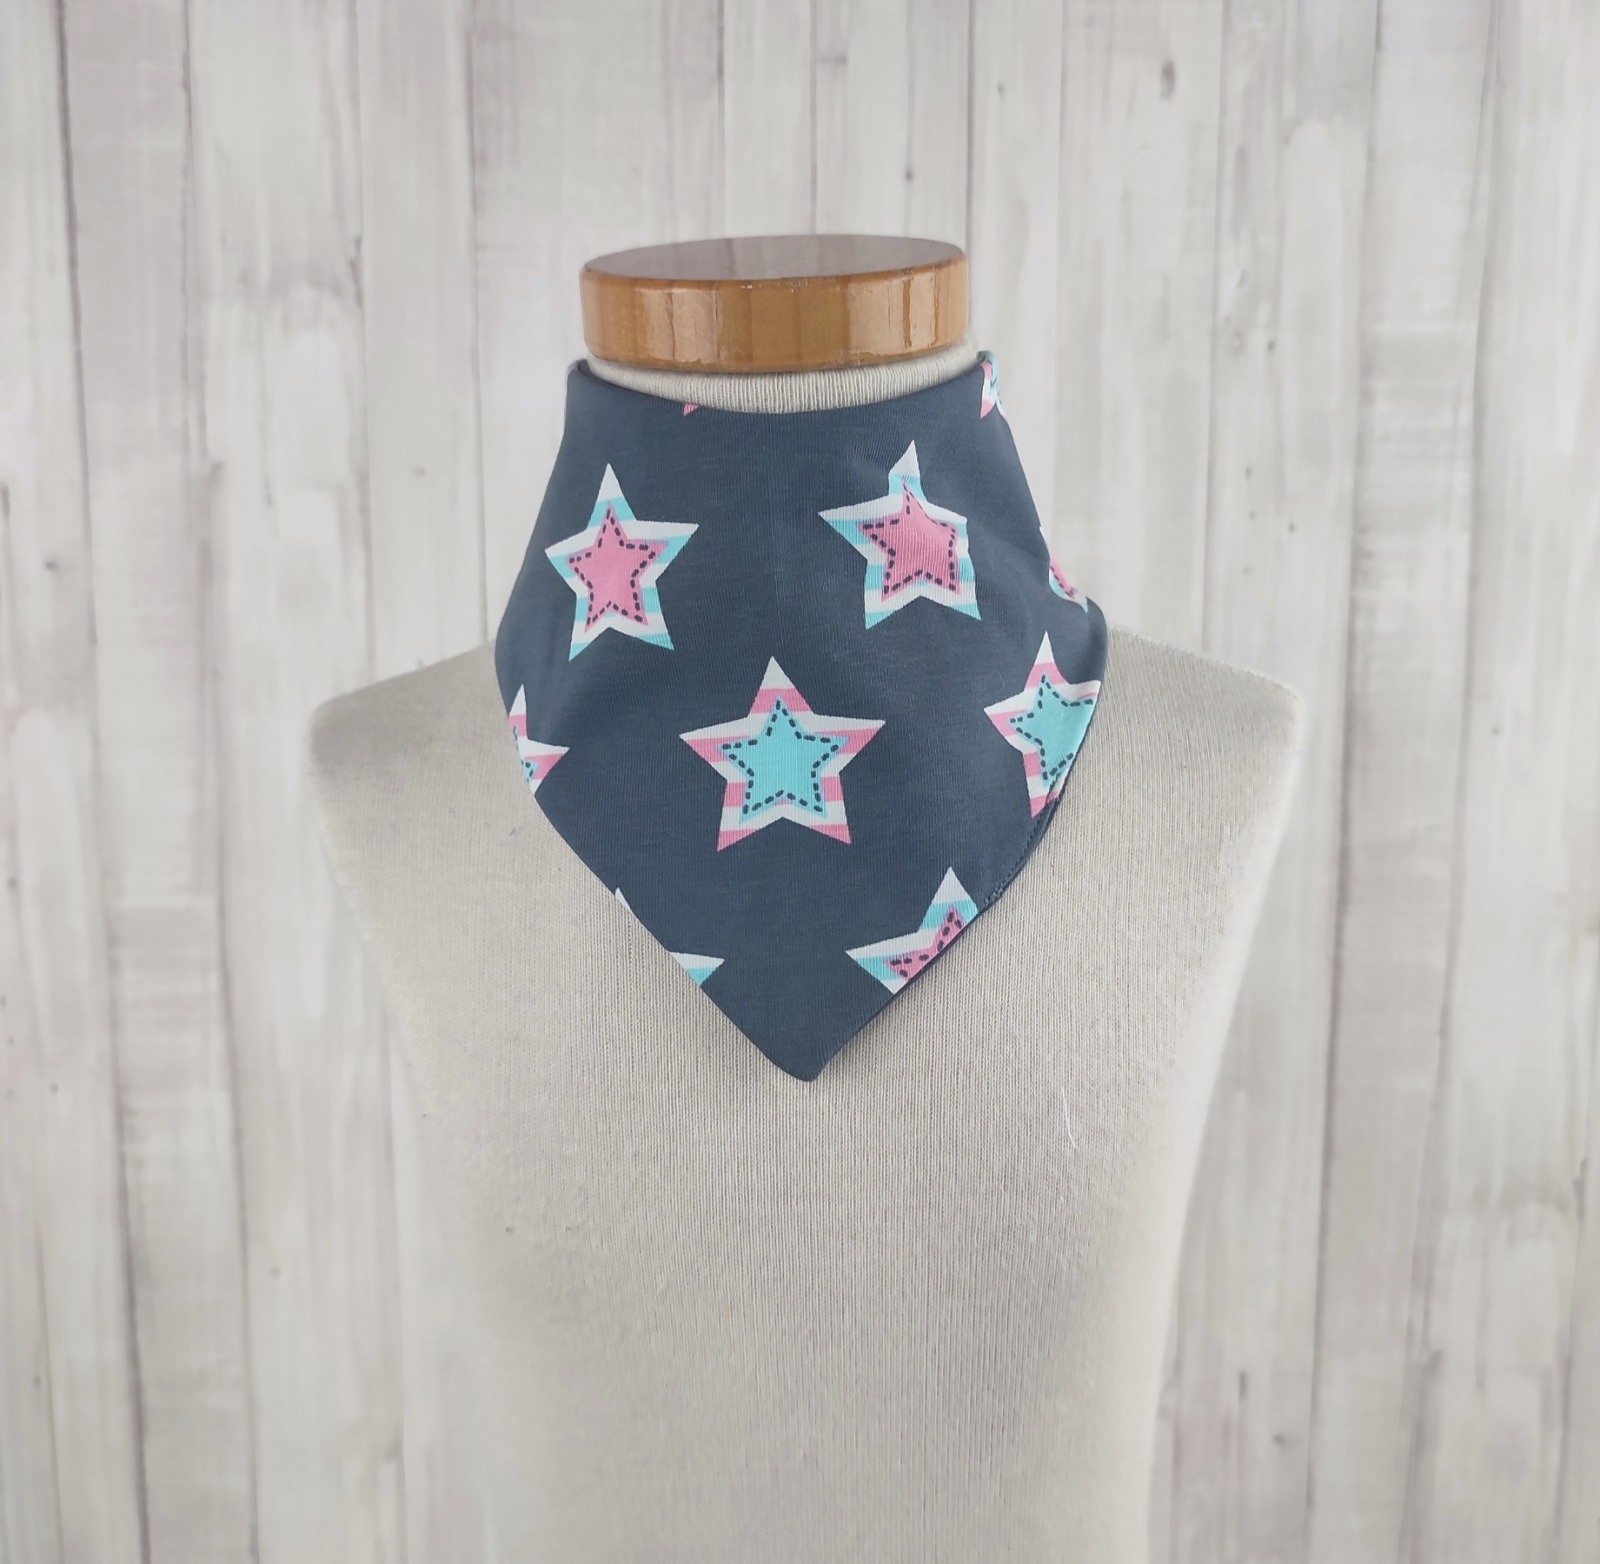 Halstuch Dreieckstuch für kleine Mädchen - grau - gemustert Sternen in rosa und mint